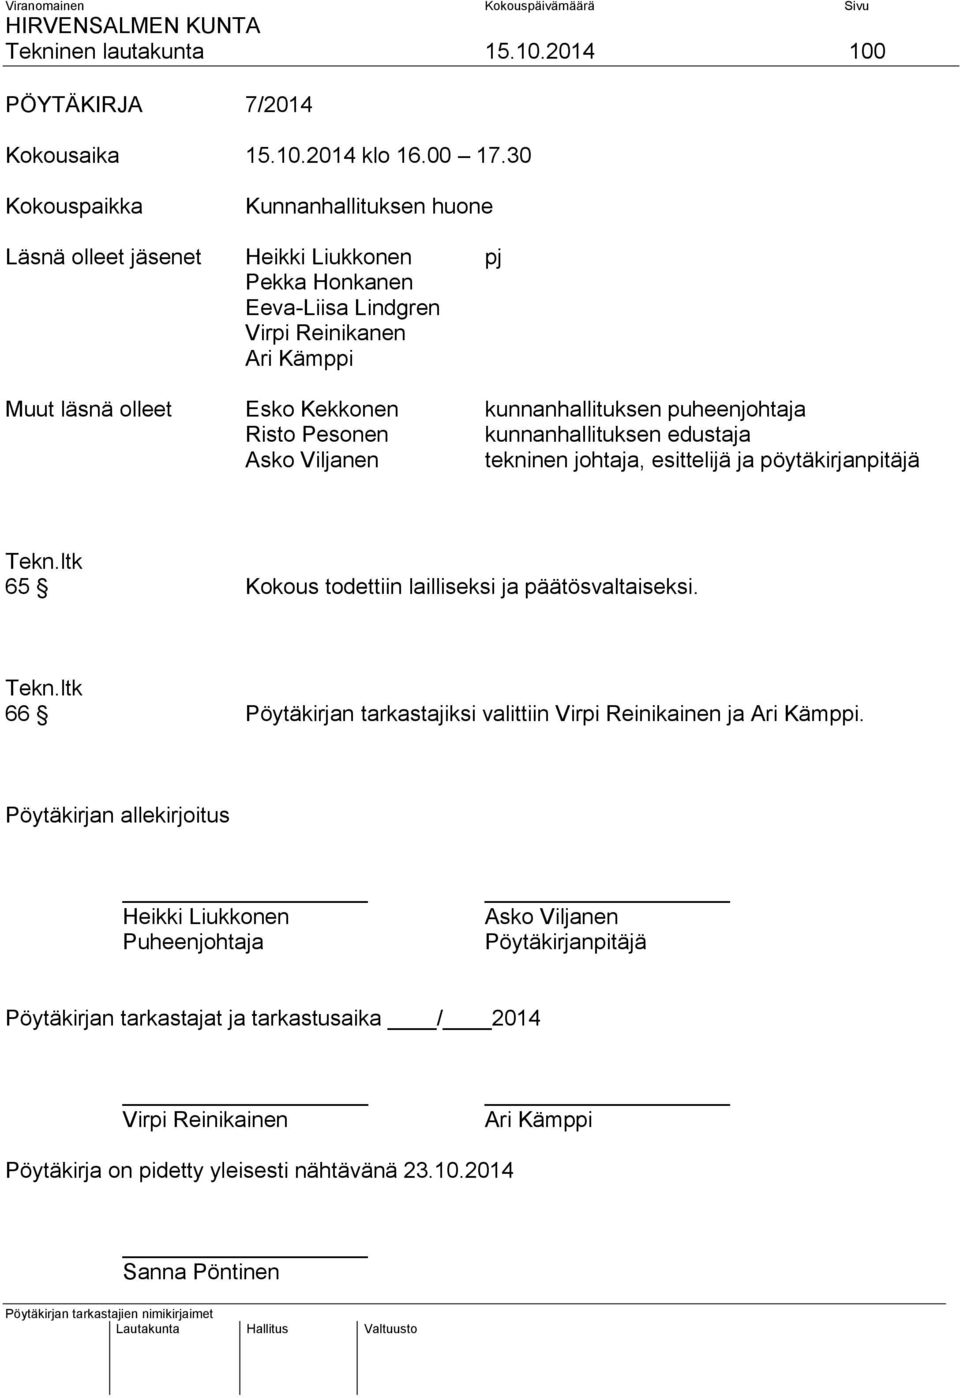 kunnanhallituksen puheenjohtaja Risto Pesonen kunnanhallituksen edustaja Asko Viljanen tekninen johtaja, esittelijä ja pöytäkirjanpitäjä 65 Kokous todettiin lailliseksi ja päätösvaltaiseksi.